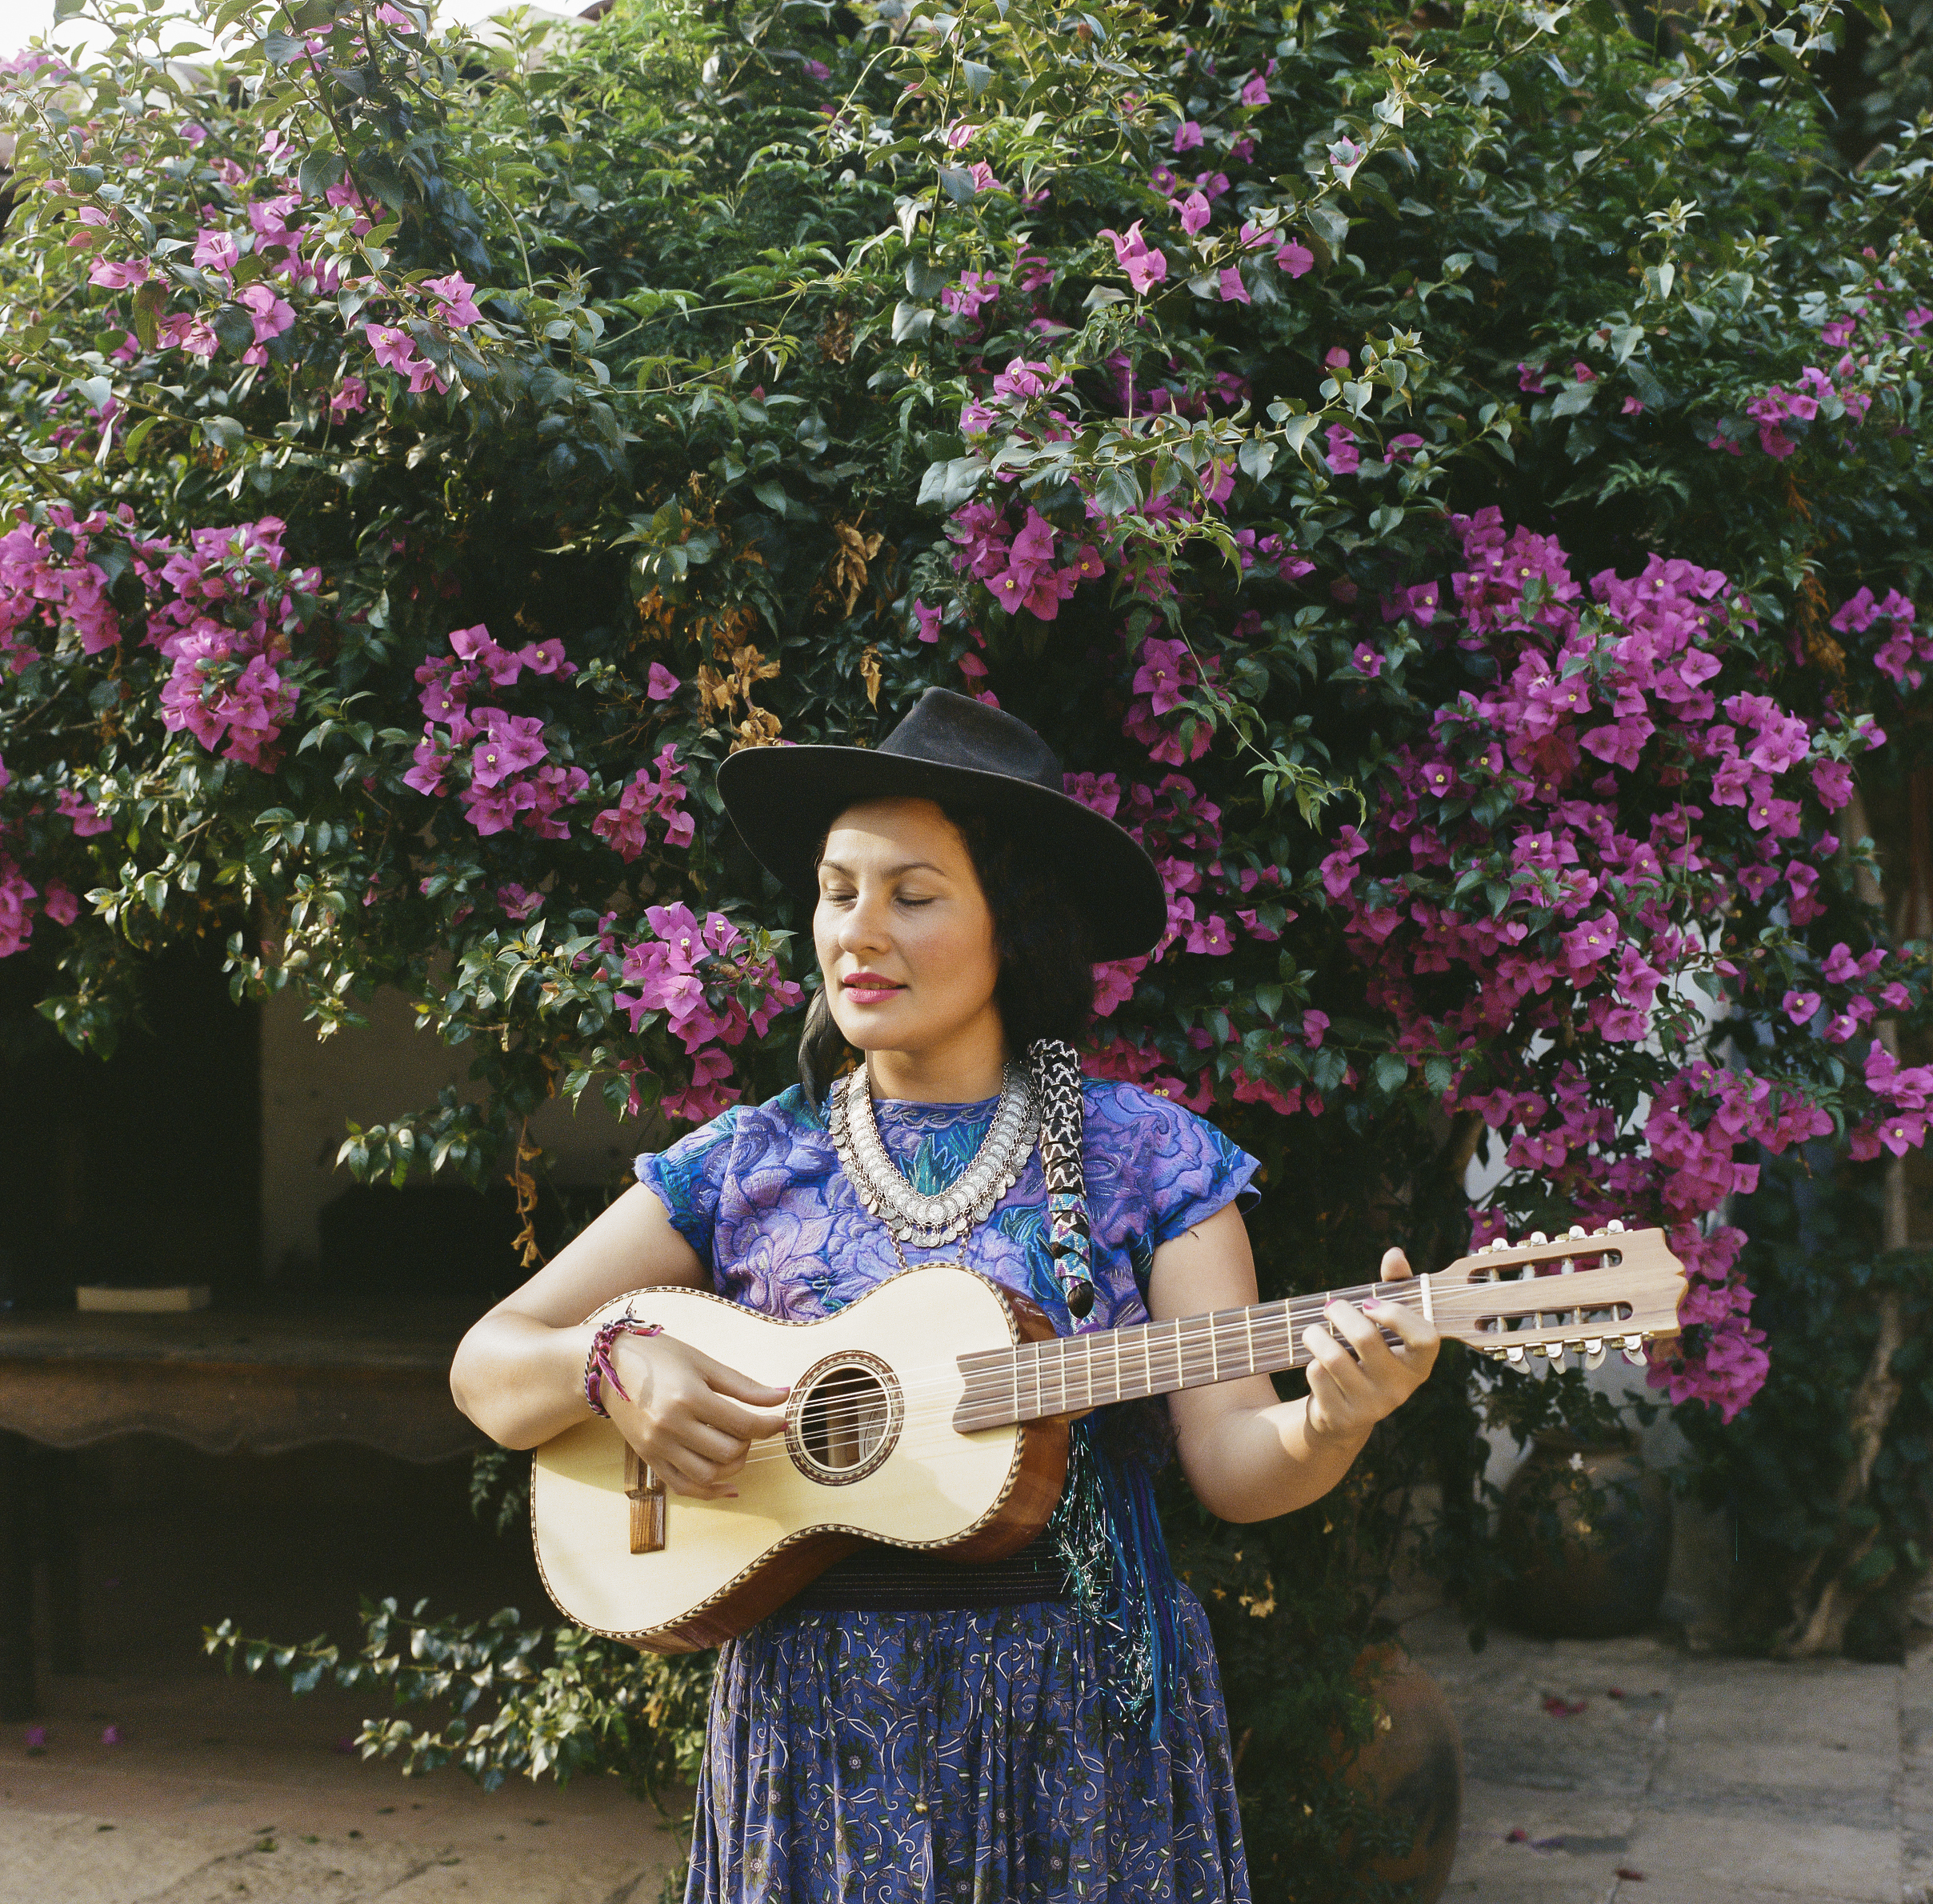   Flora, Musician. Chiapas, Mexico  